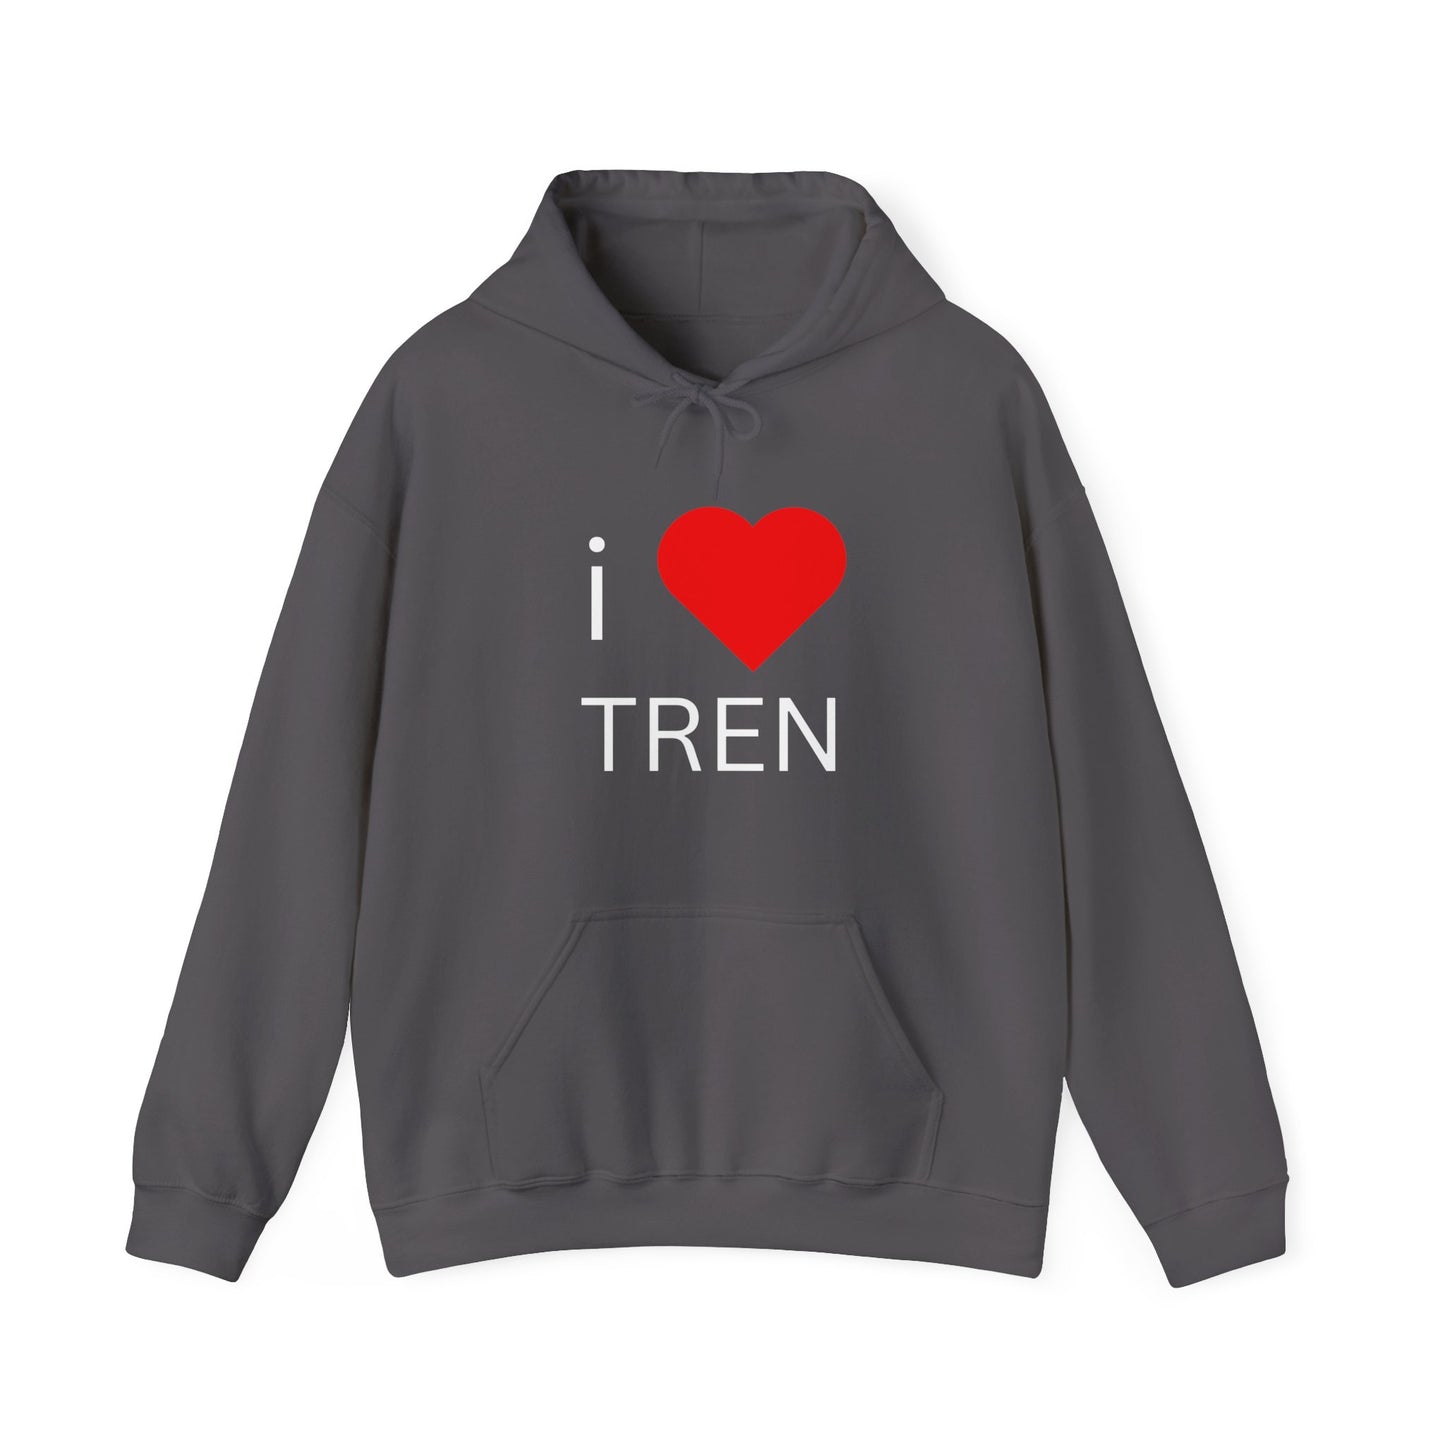 I Love Tren Hooded Sweatshirt - White Letters